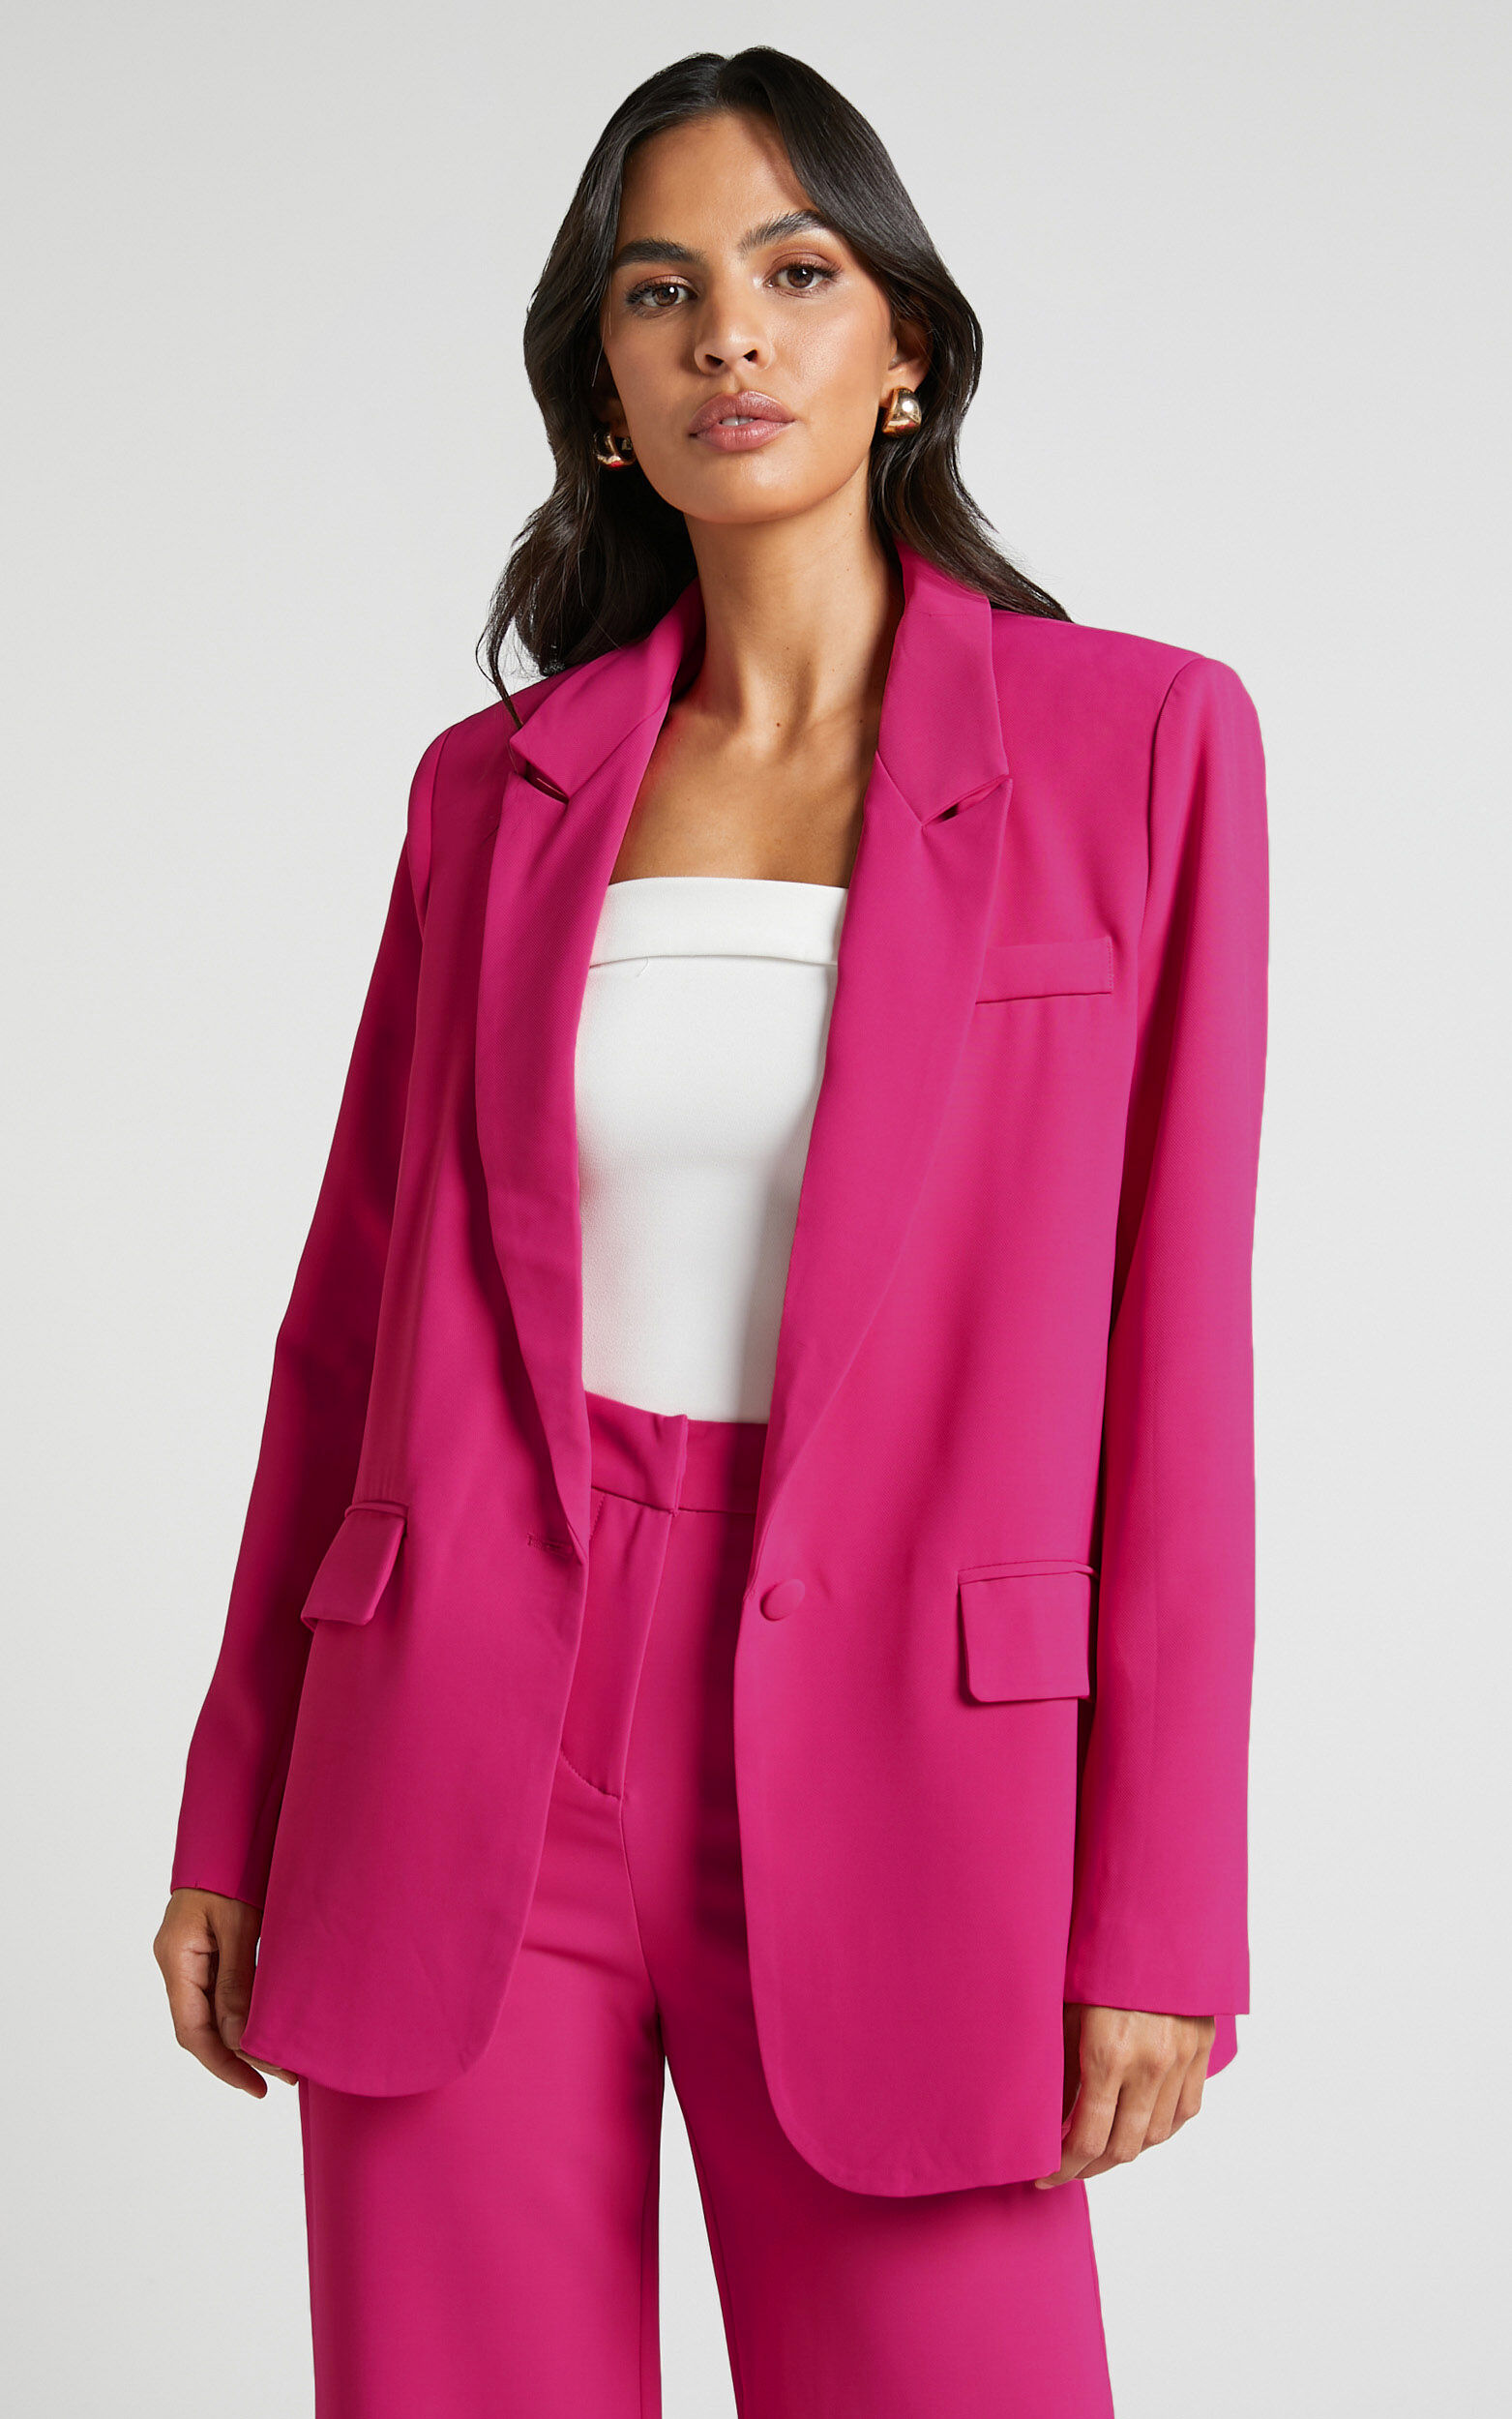 Michelle Oversized Plunge Neck Button Up Blazer in Pink | Showpo